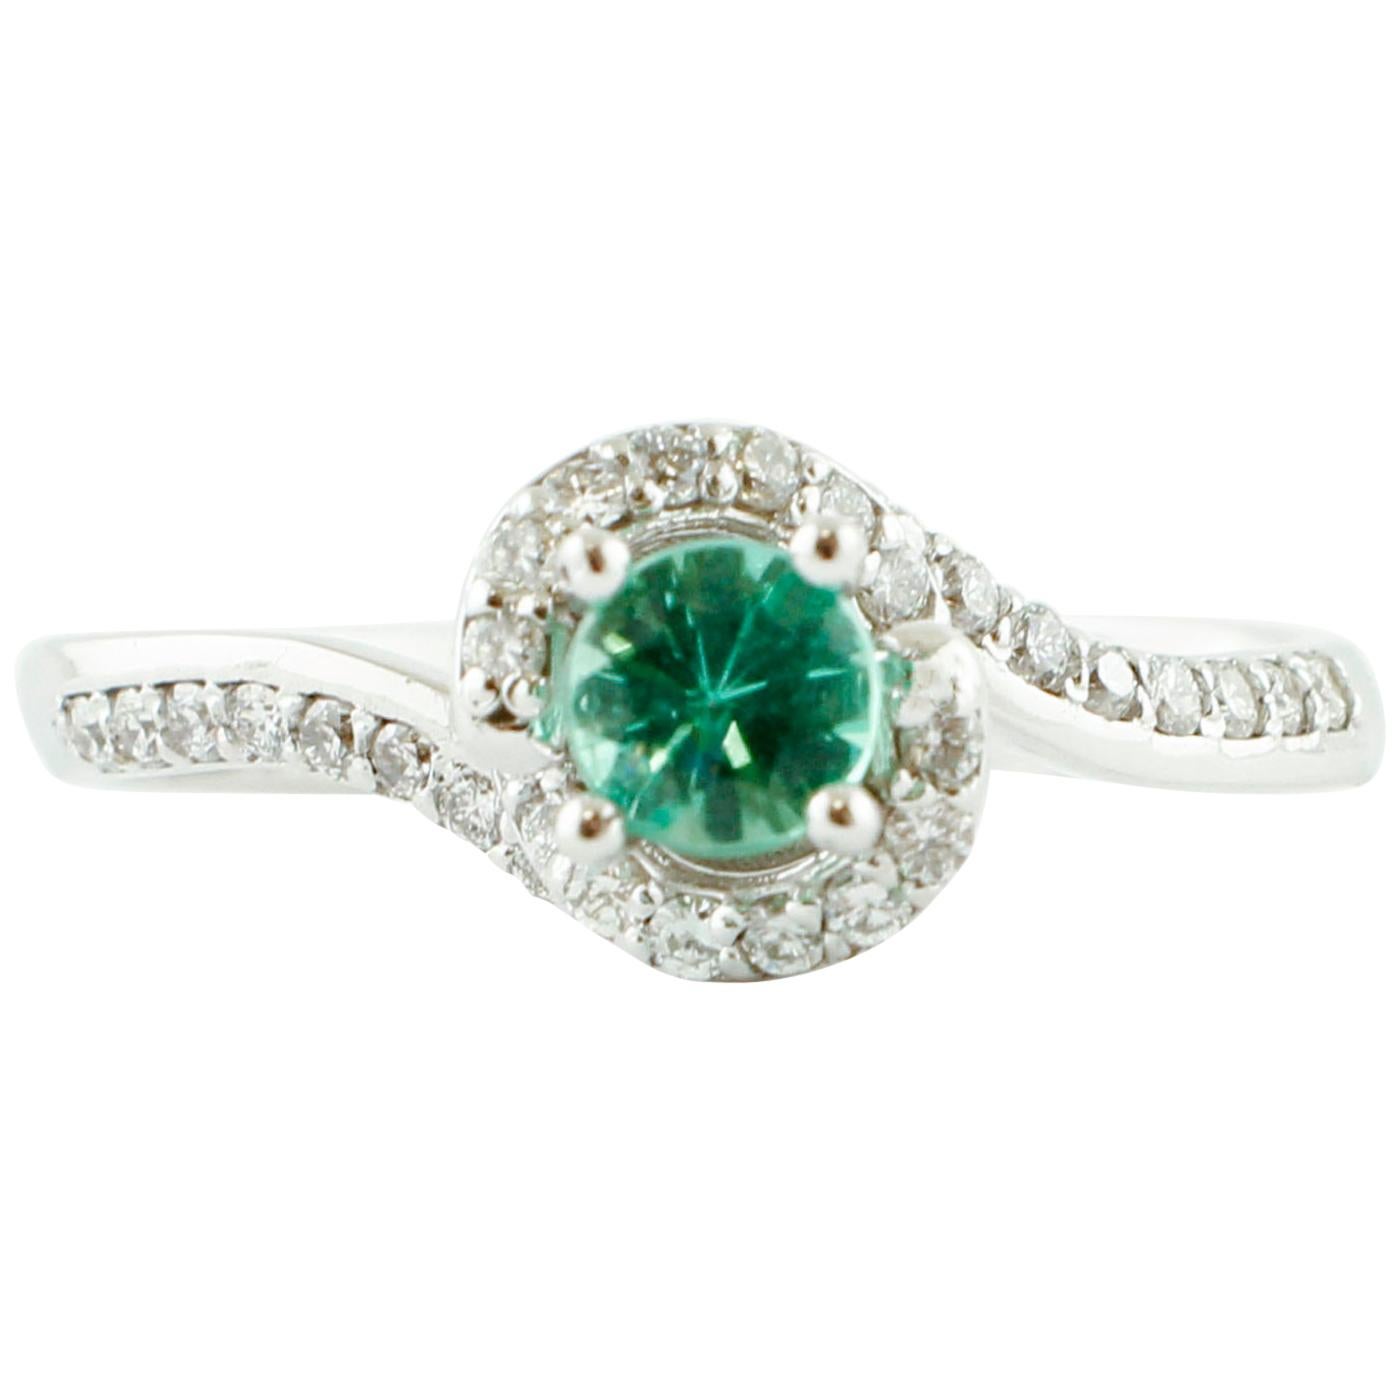 Verlobungs-/Solitaire-Ring mit Diamanten, Smaragd, 18 Karat Weißgold